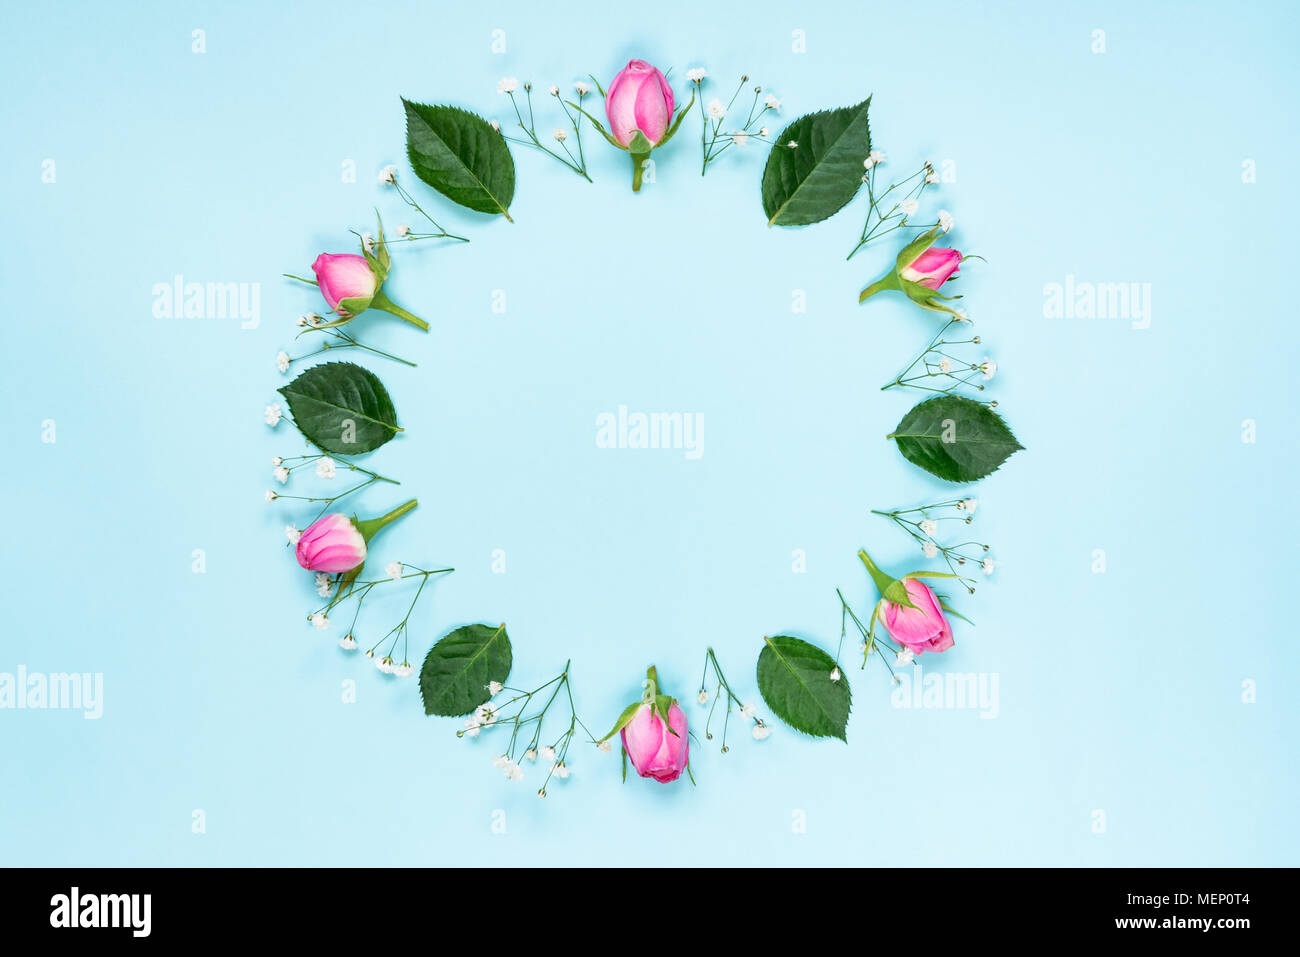 Vue de dessus de roses roses et couronne de feuilles vertes sur fond bleu. Abstract floral background. Banque D'Images